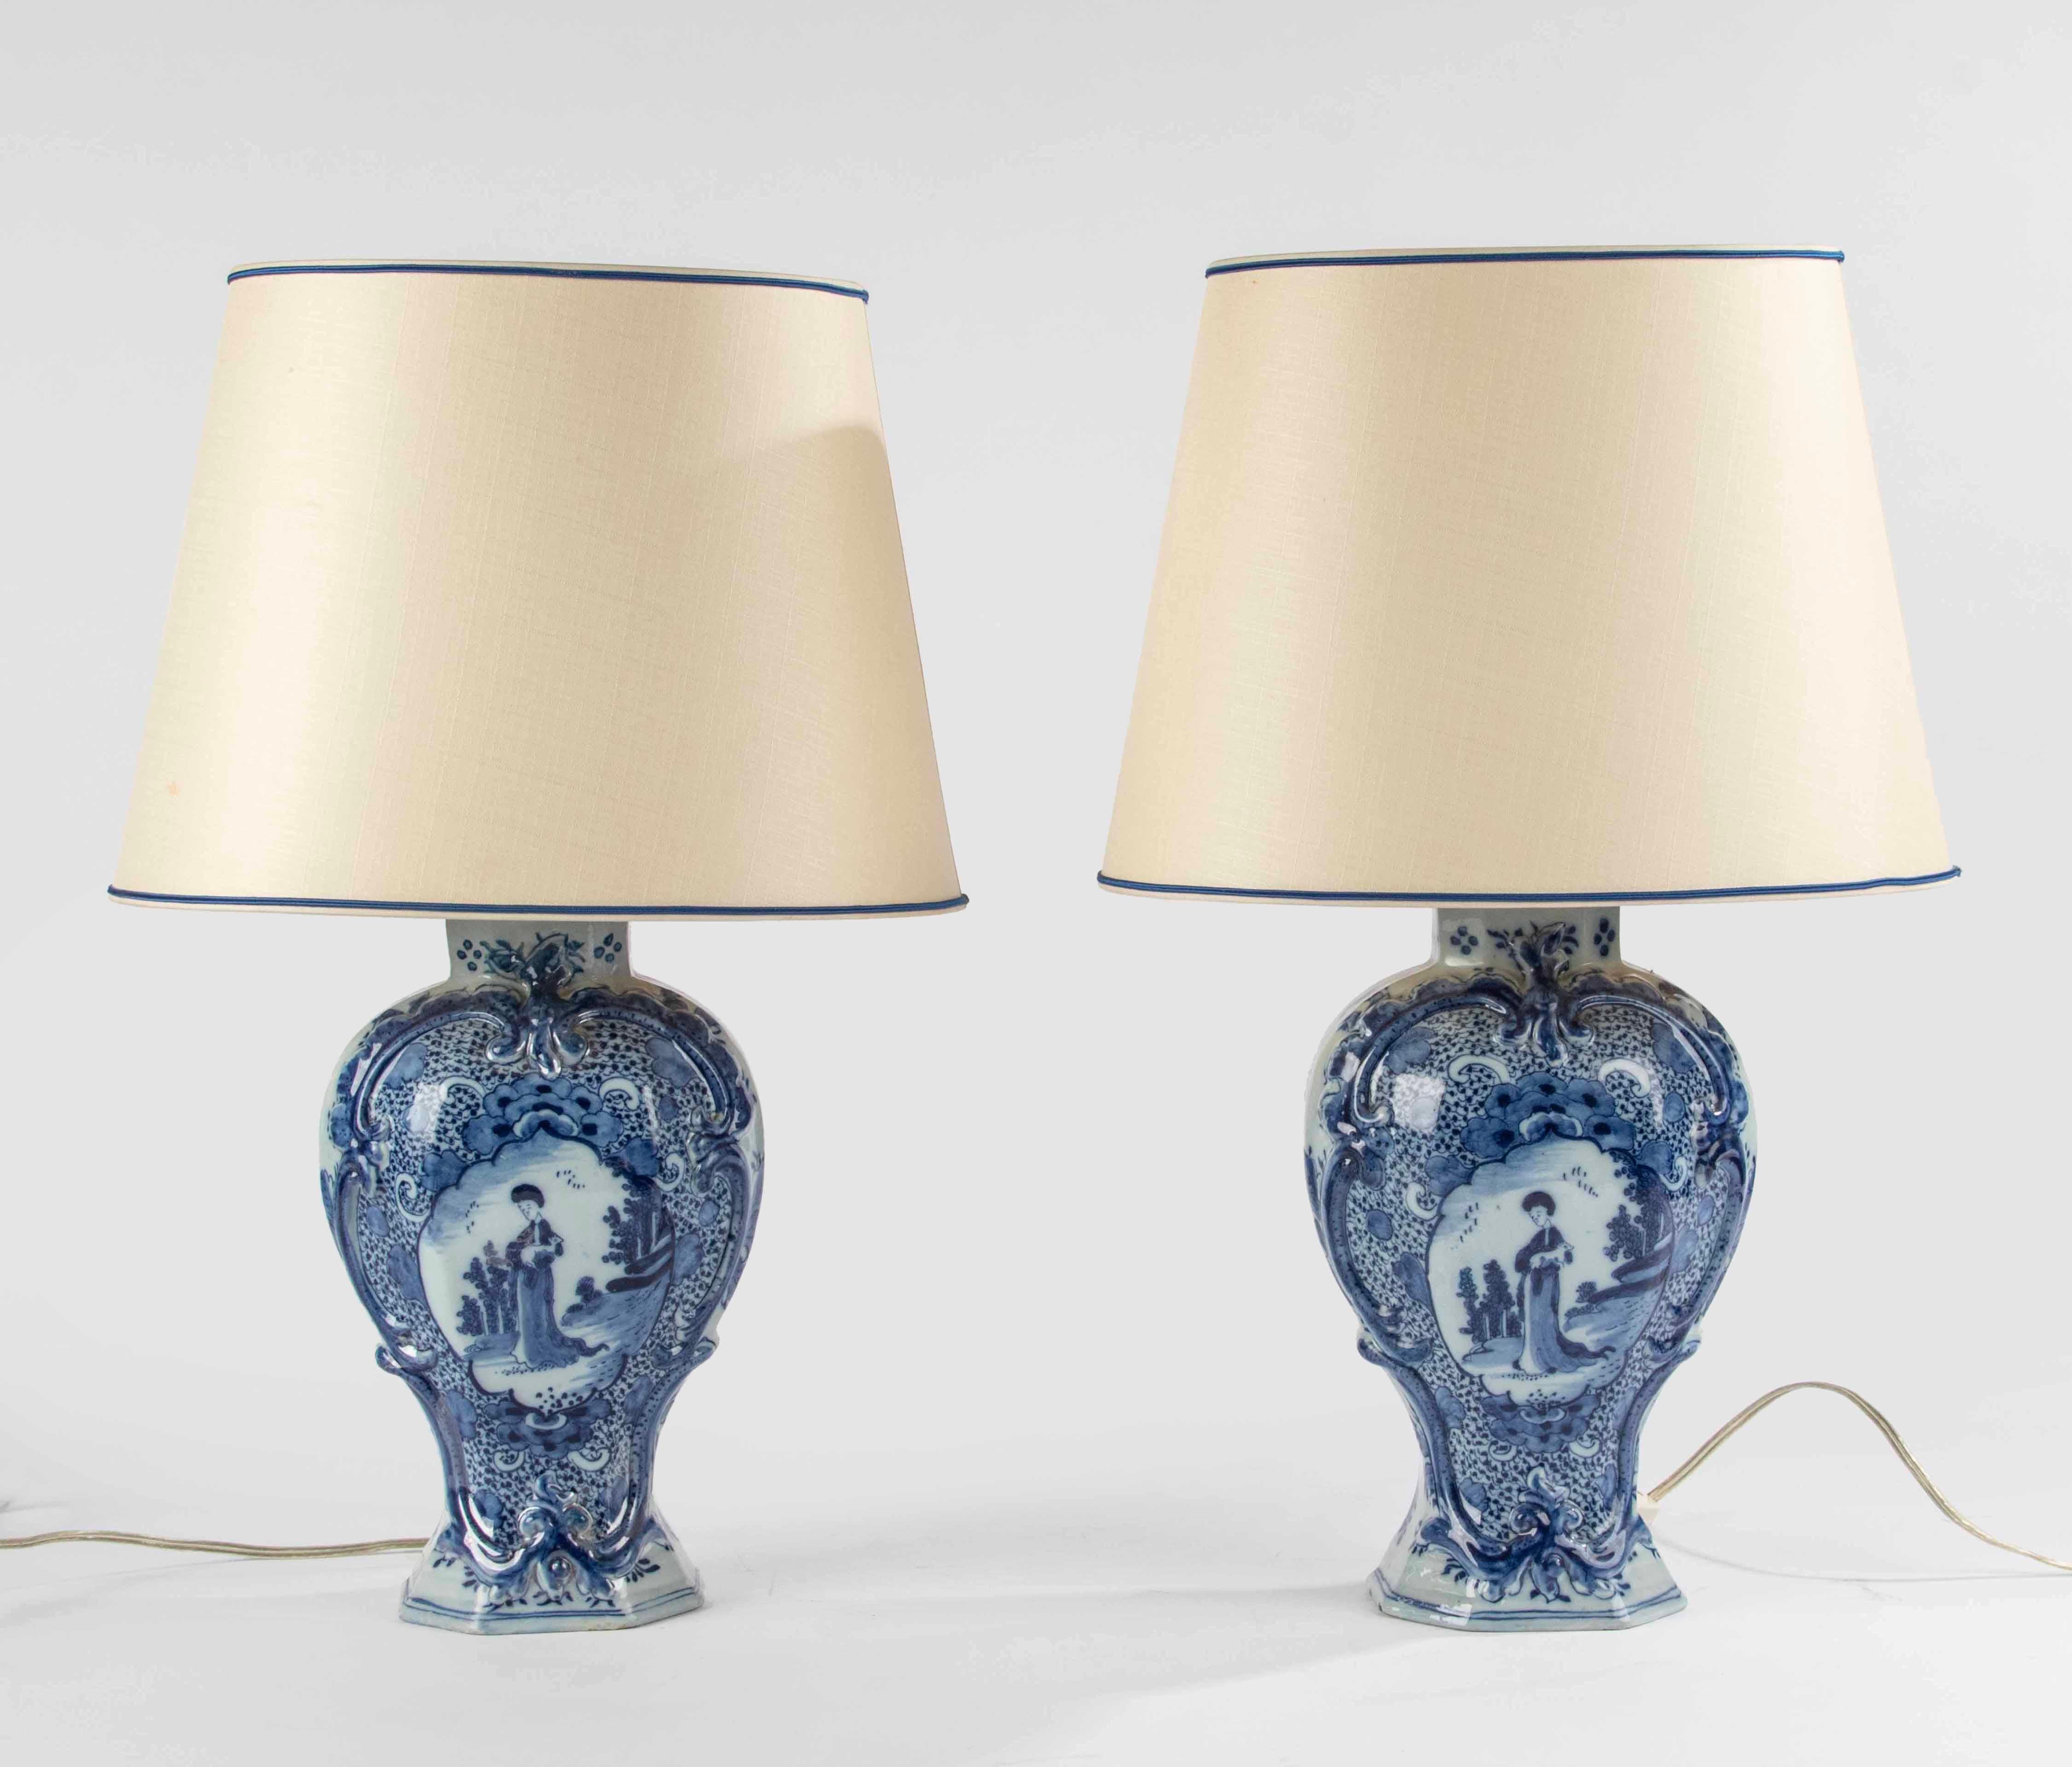 Ein bezauberndes Paar blau-weißer Delfter Keramikvasen aus dem späten 18. Jahrhundert, die kürzlich als Lampen montiert wurden. 
Die Vasen sind wunderschön verziert mit Blumenornamenten im typischen Delfter Stil und einer Szene mit einer Frau, die